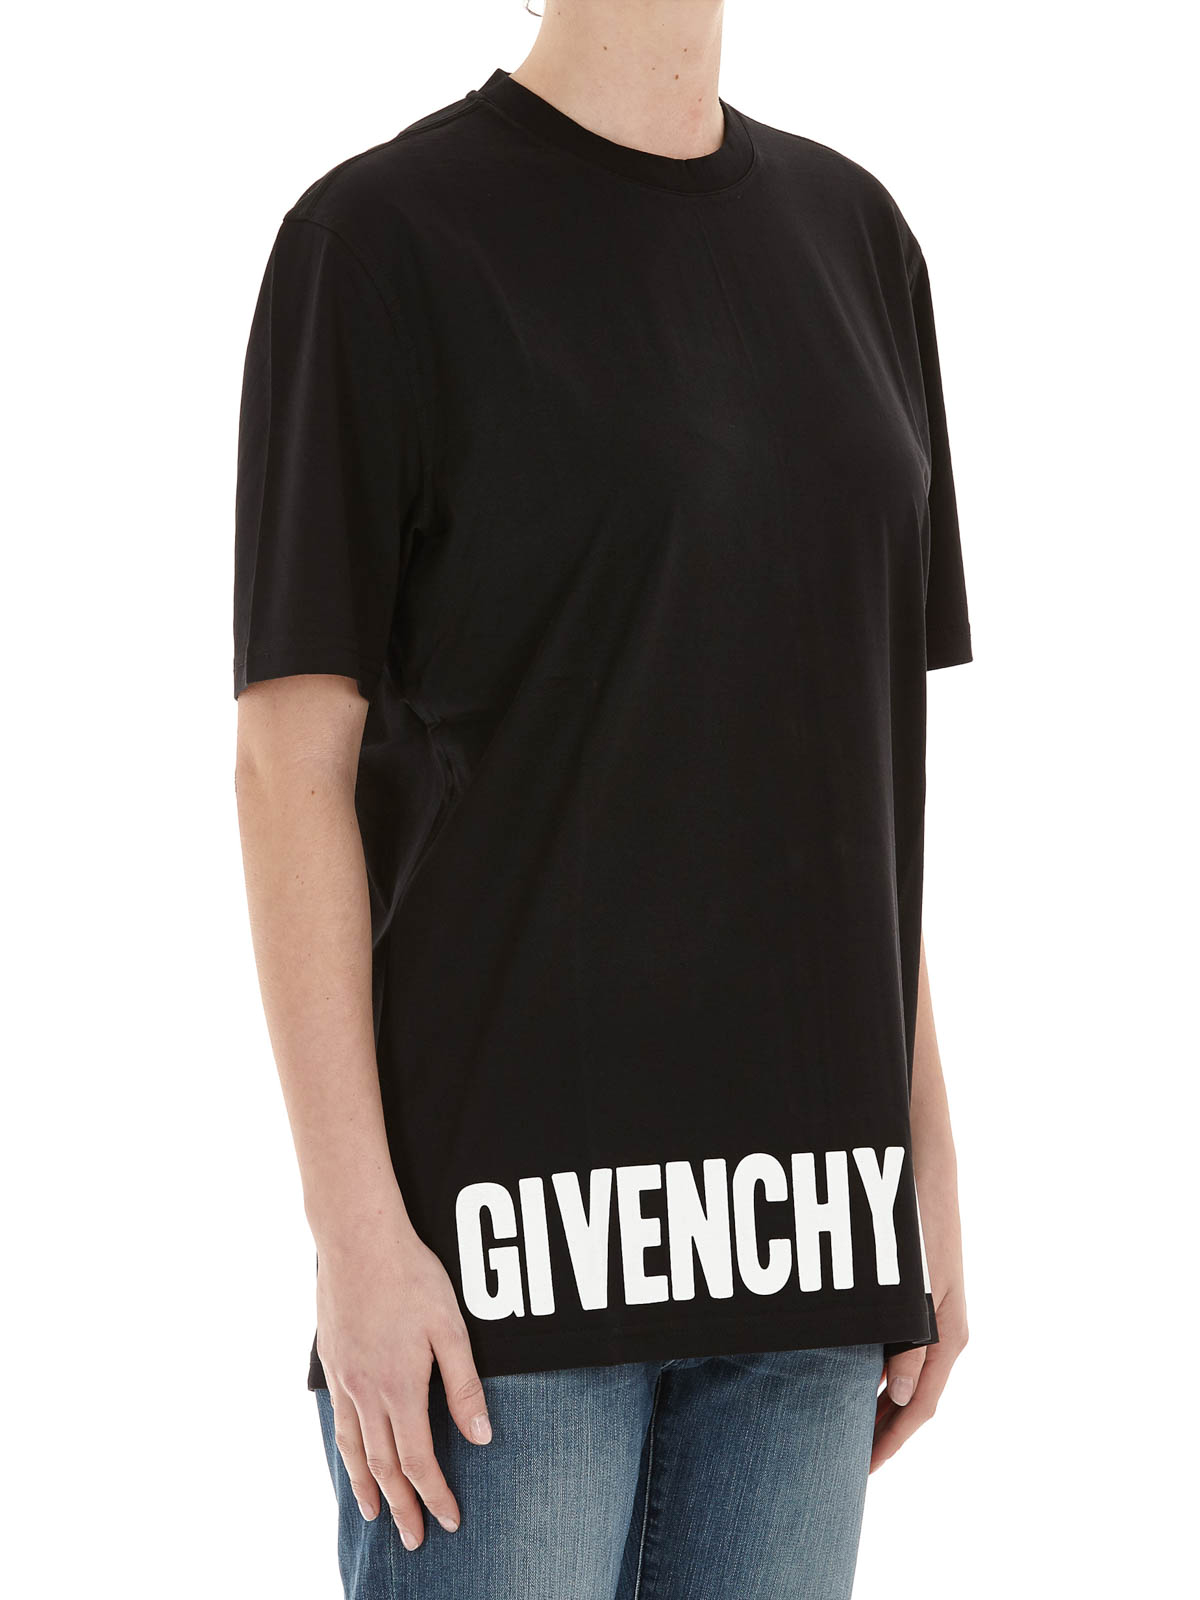 Tシャツ Givenchy - Tシャツ レディース - 黒 - 17P7701484004